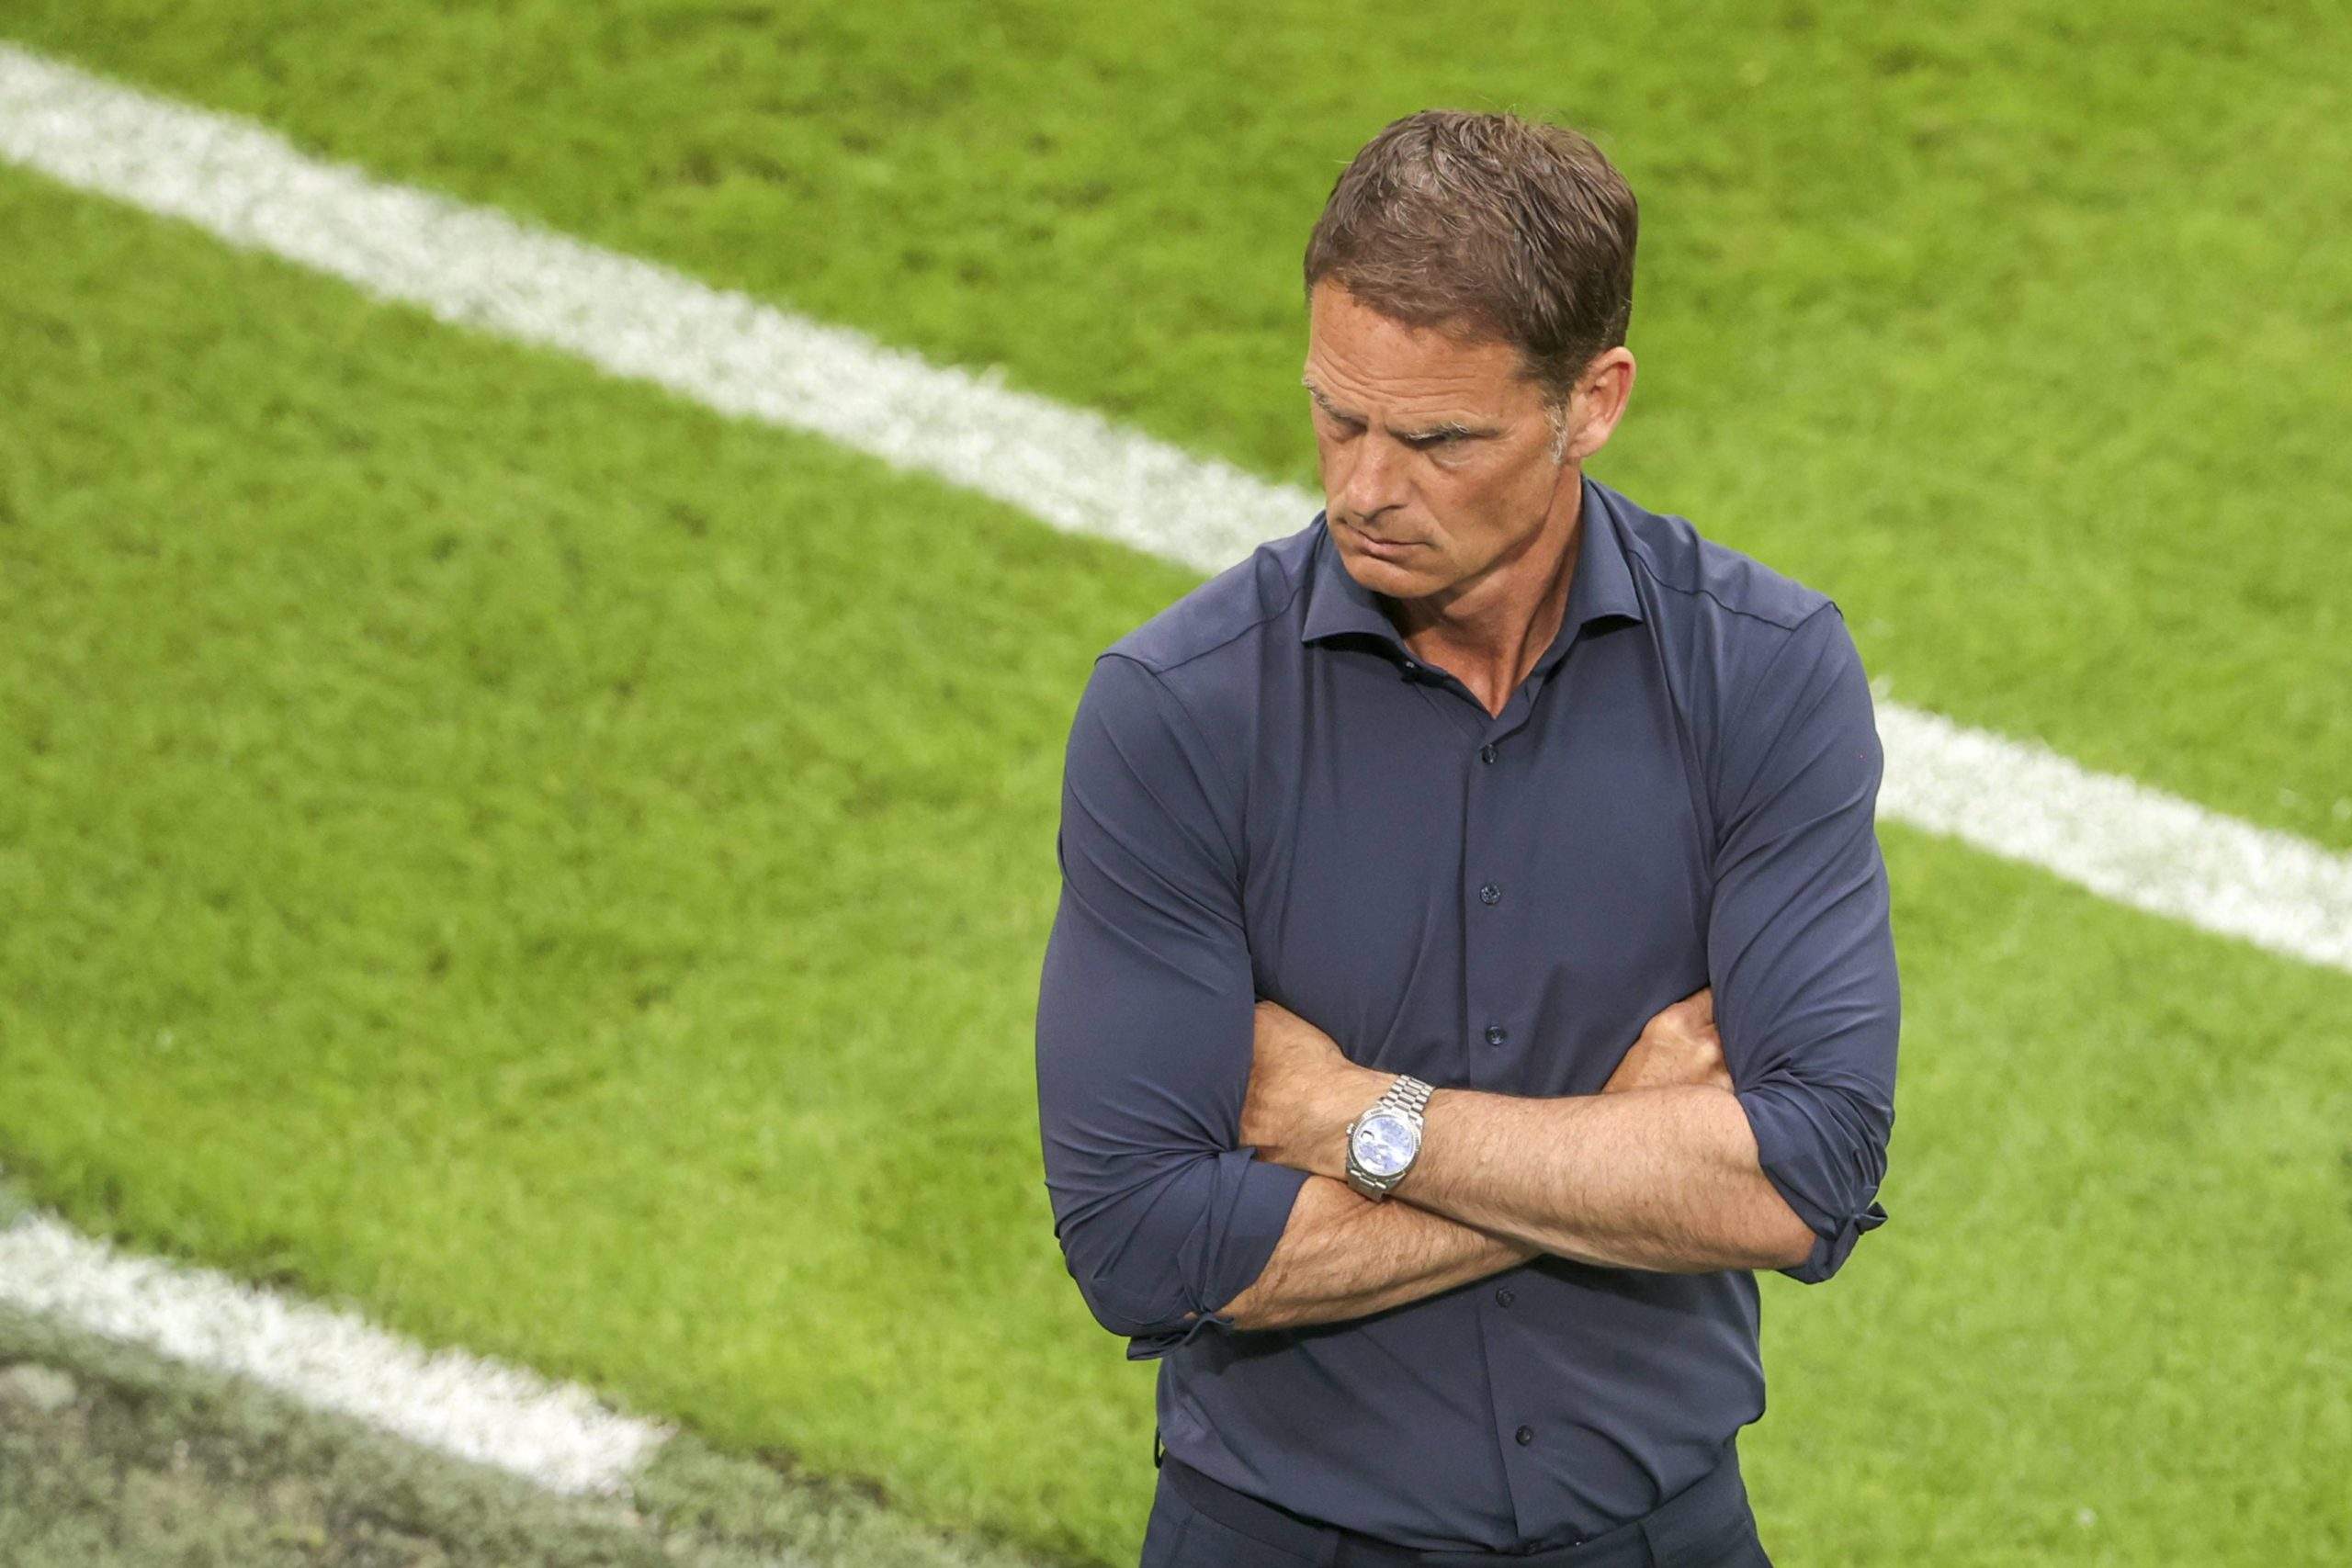 Holenderscy trenerzy i Premier League – nie całkiem udana relacja